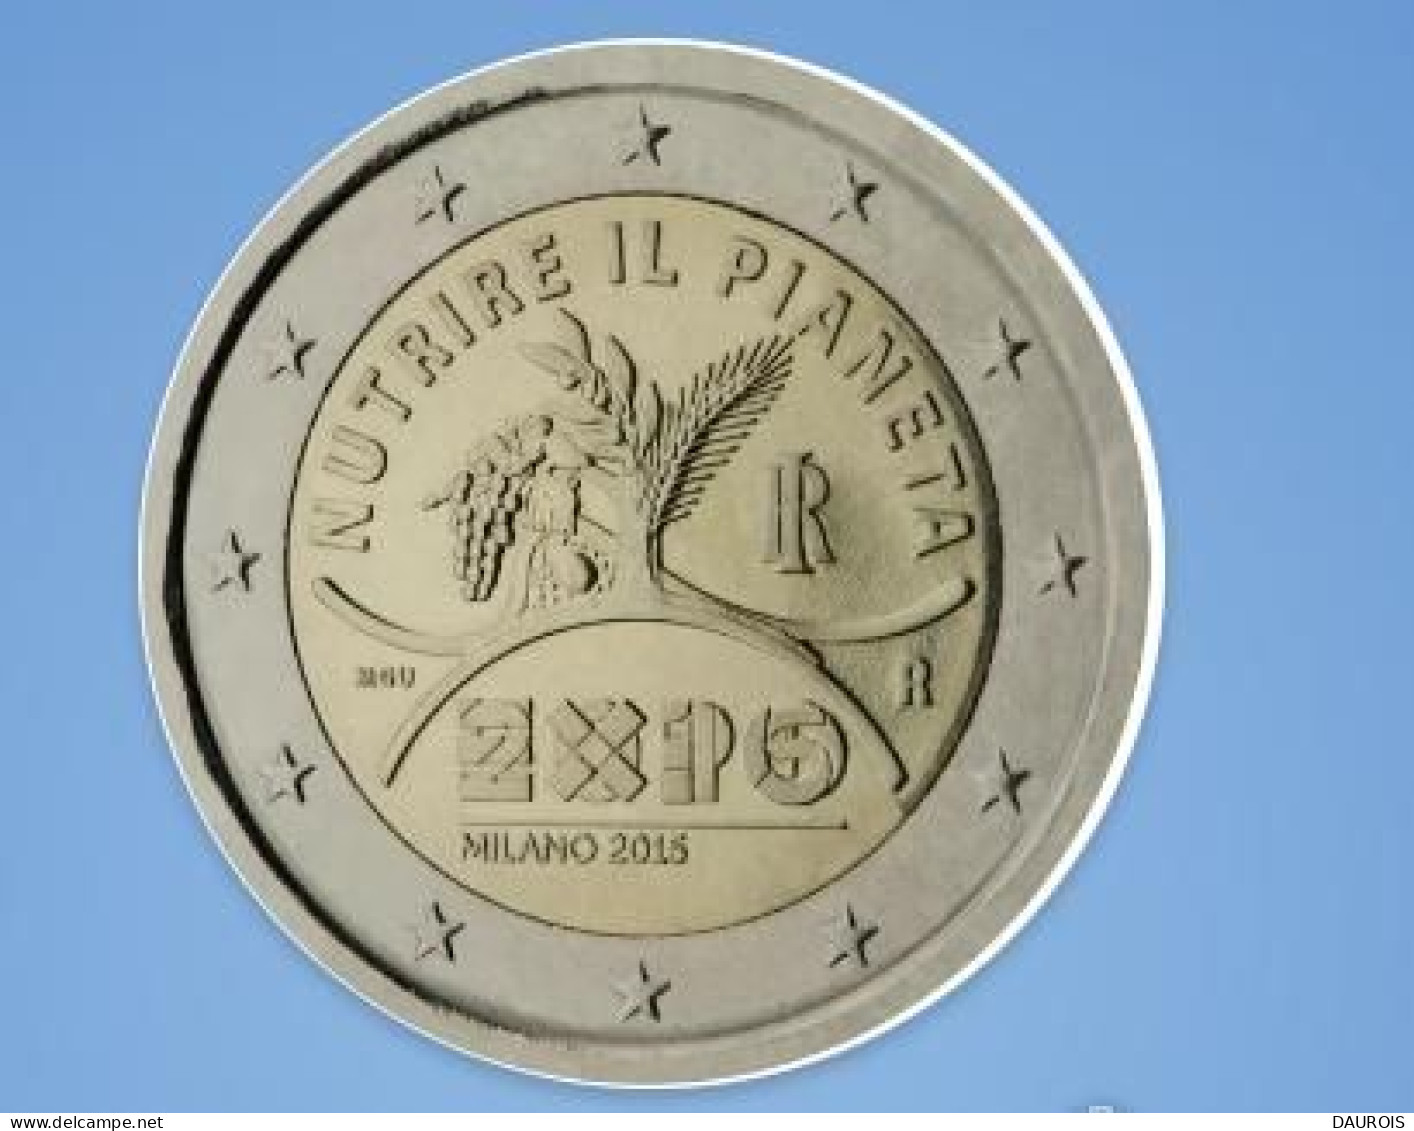 Série complète 2015 - 23 pièces 2 euro commémoratives